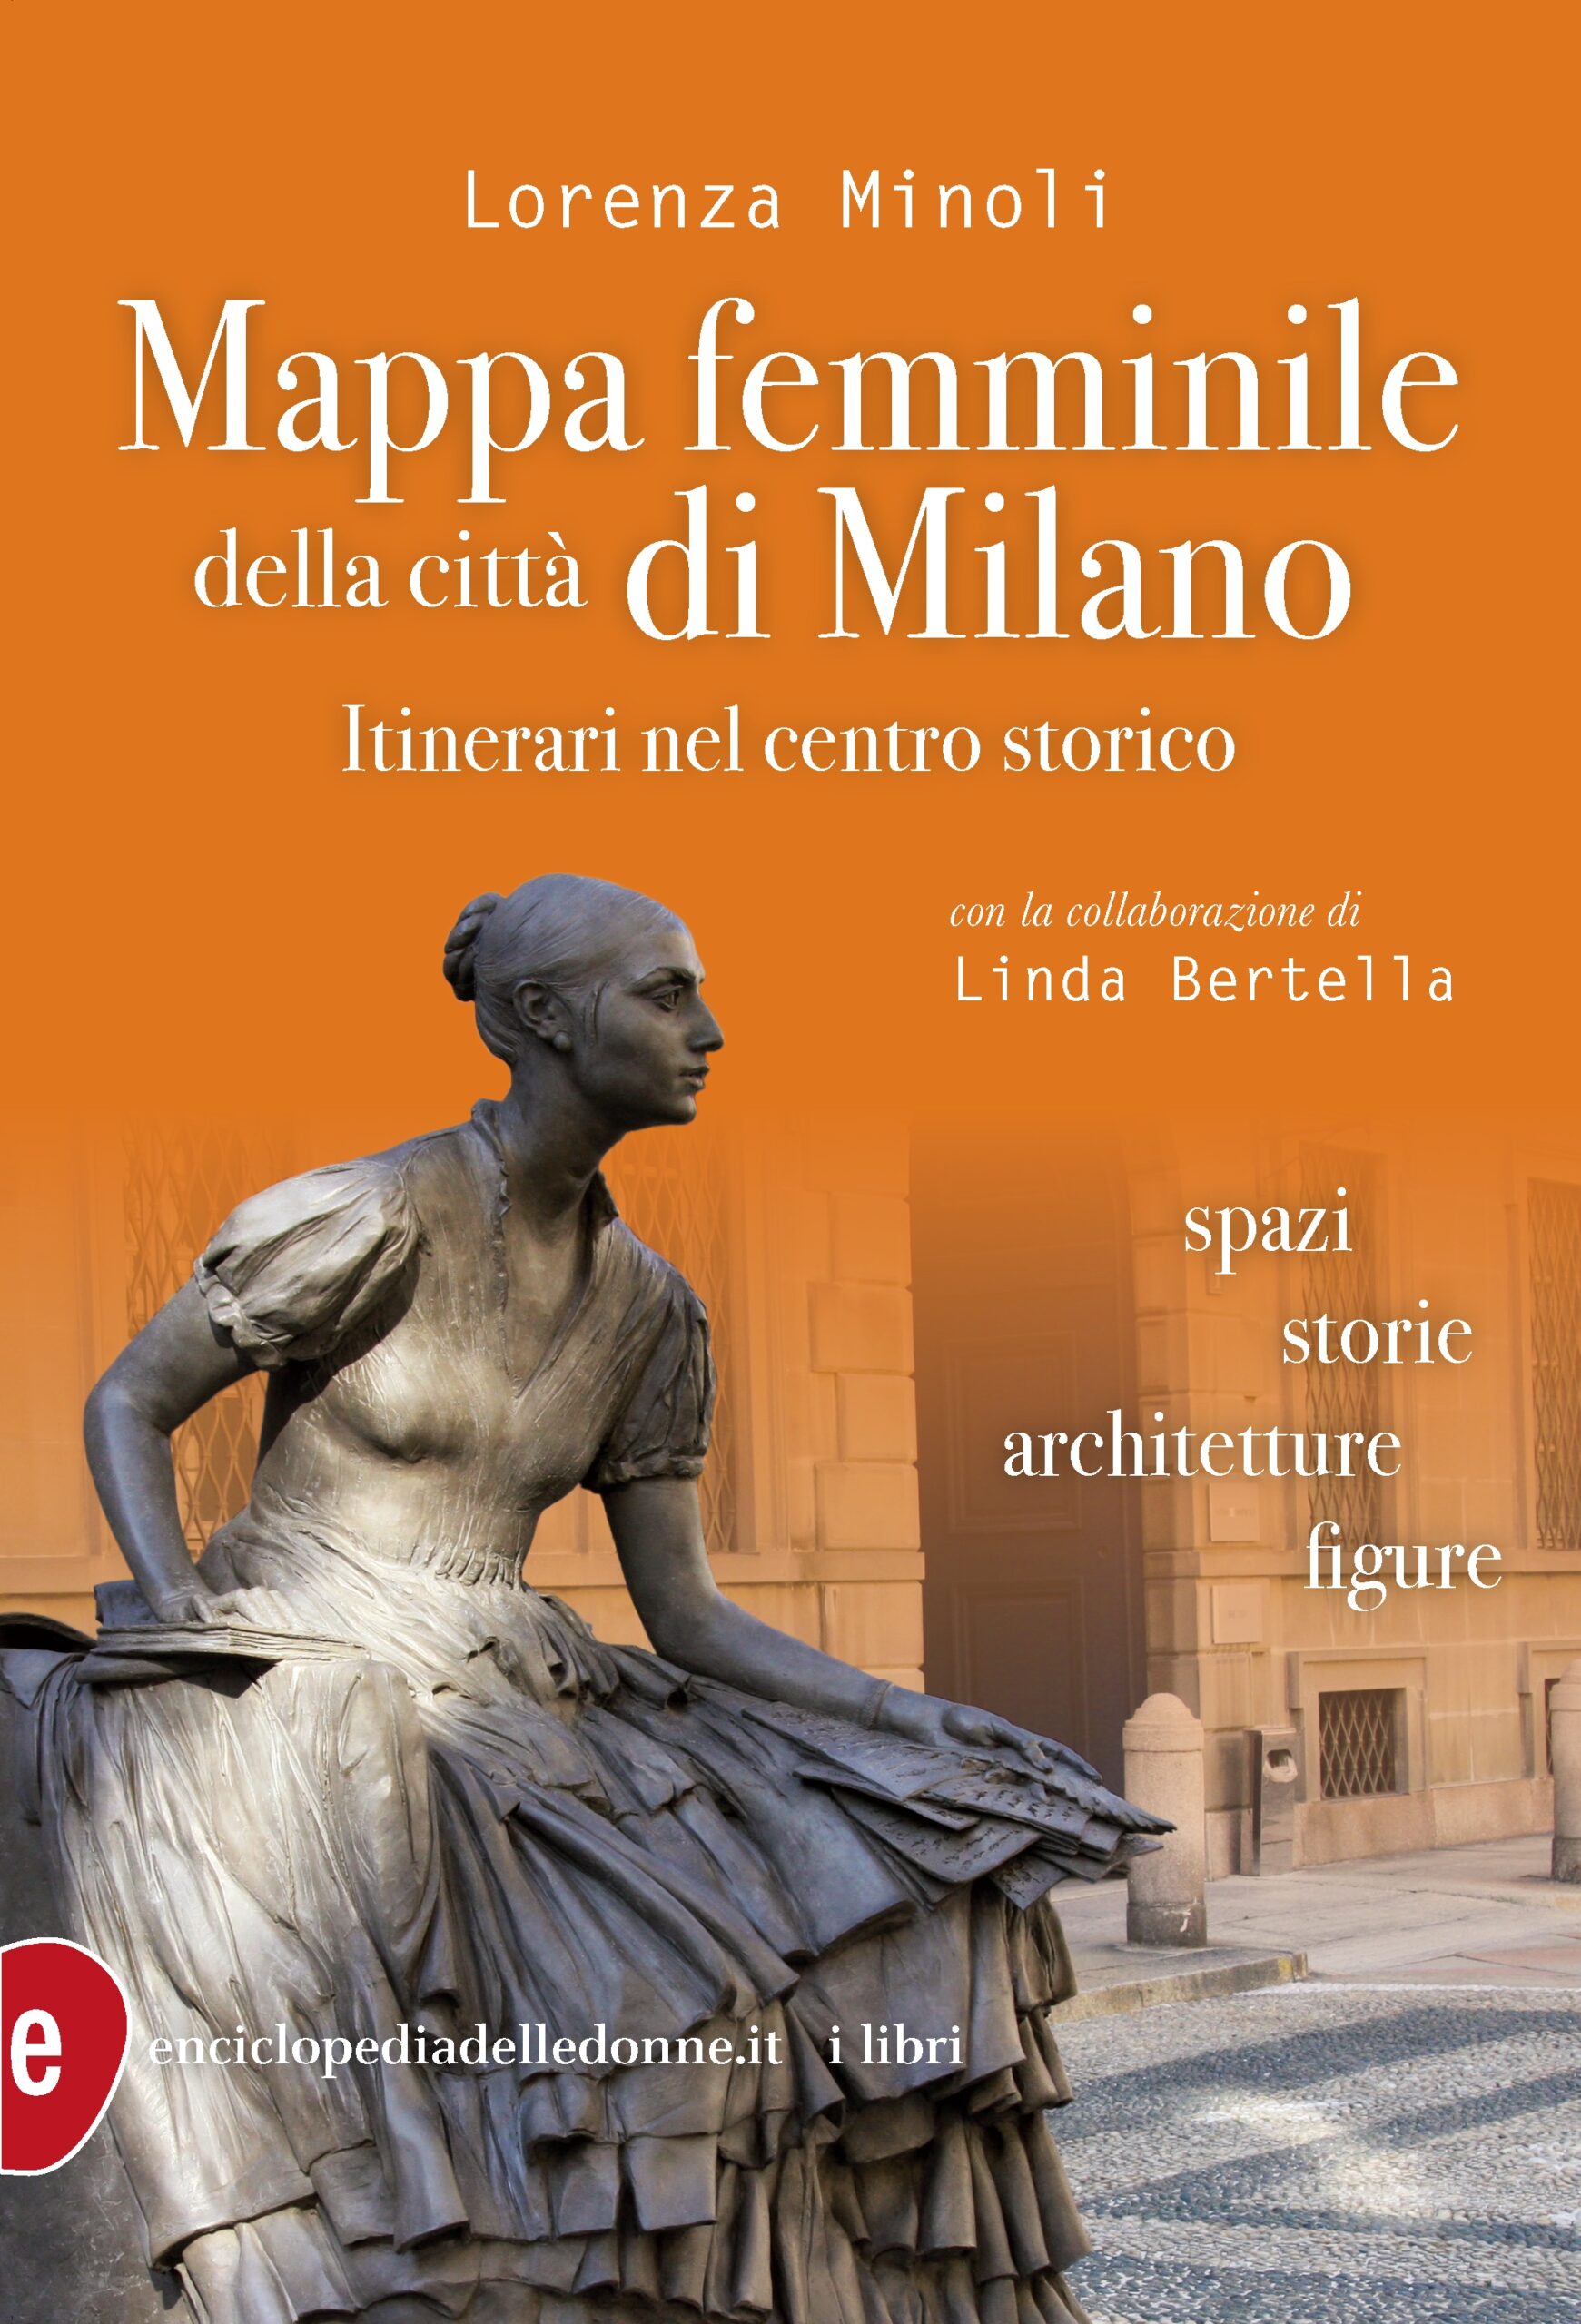 copertina di: Mappa femminile della città di Milano Itinerari nel centro storico. Spazi, storie, architetture, figure. di Lorenza Minoli, con la collaborazione di Linda Bertella